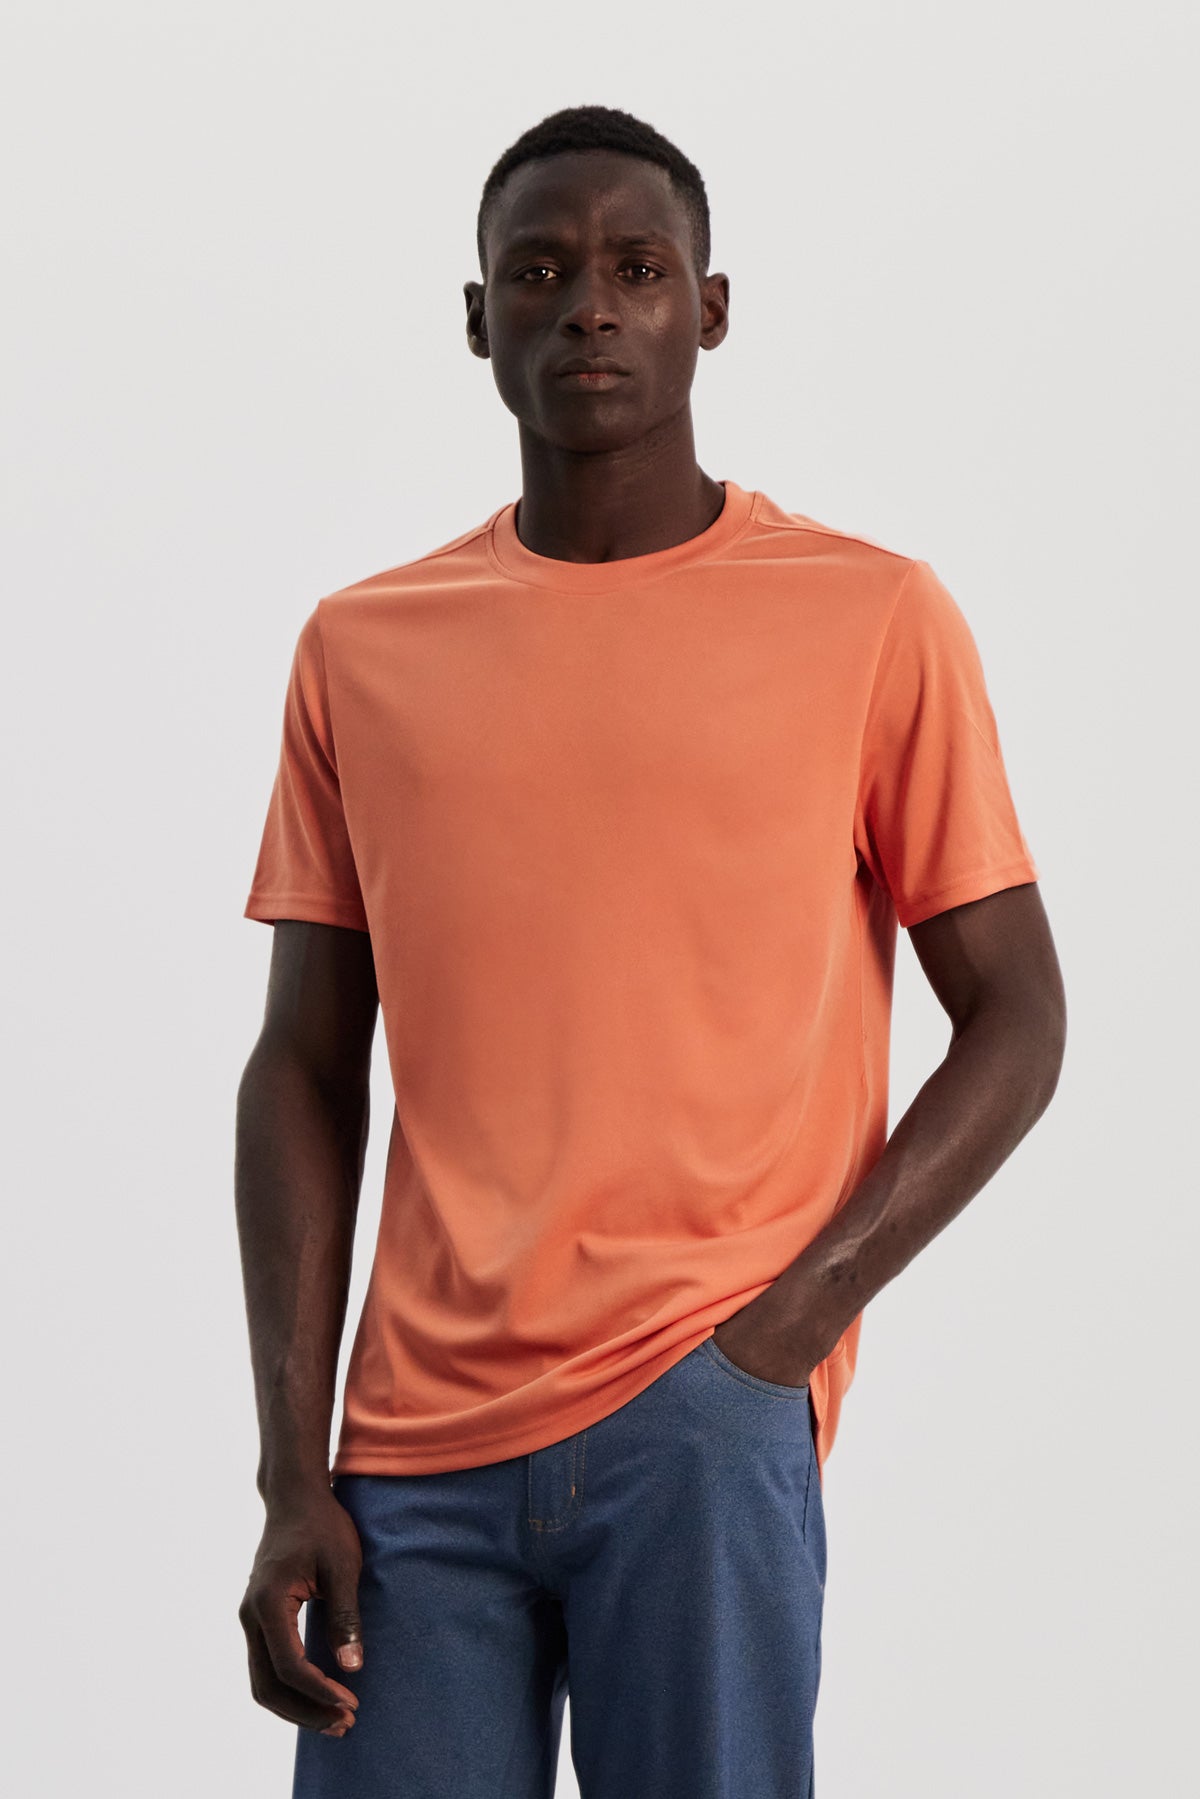 Camiseta hombre naranja cometa - Sepiia